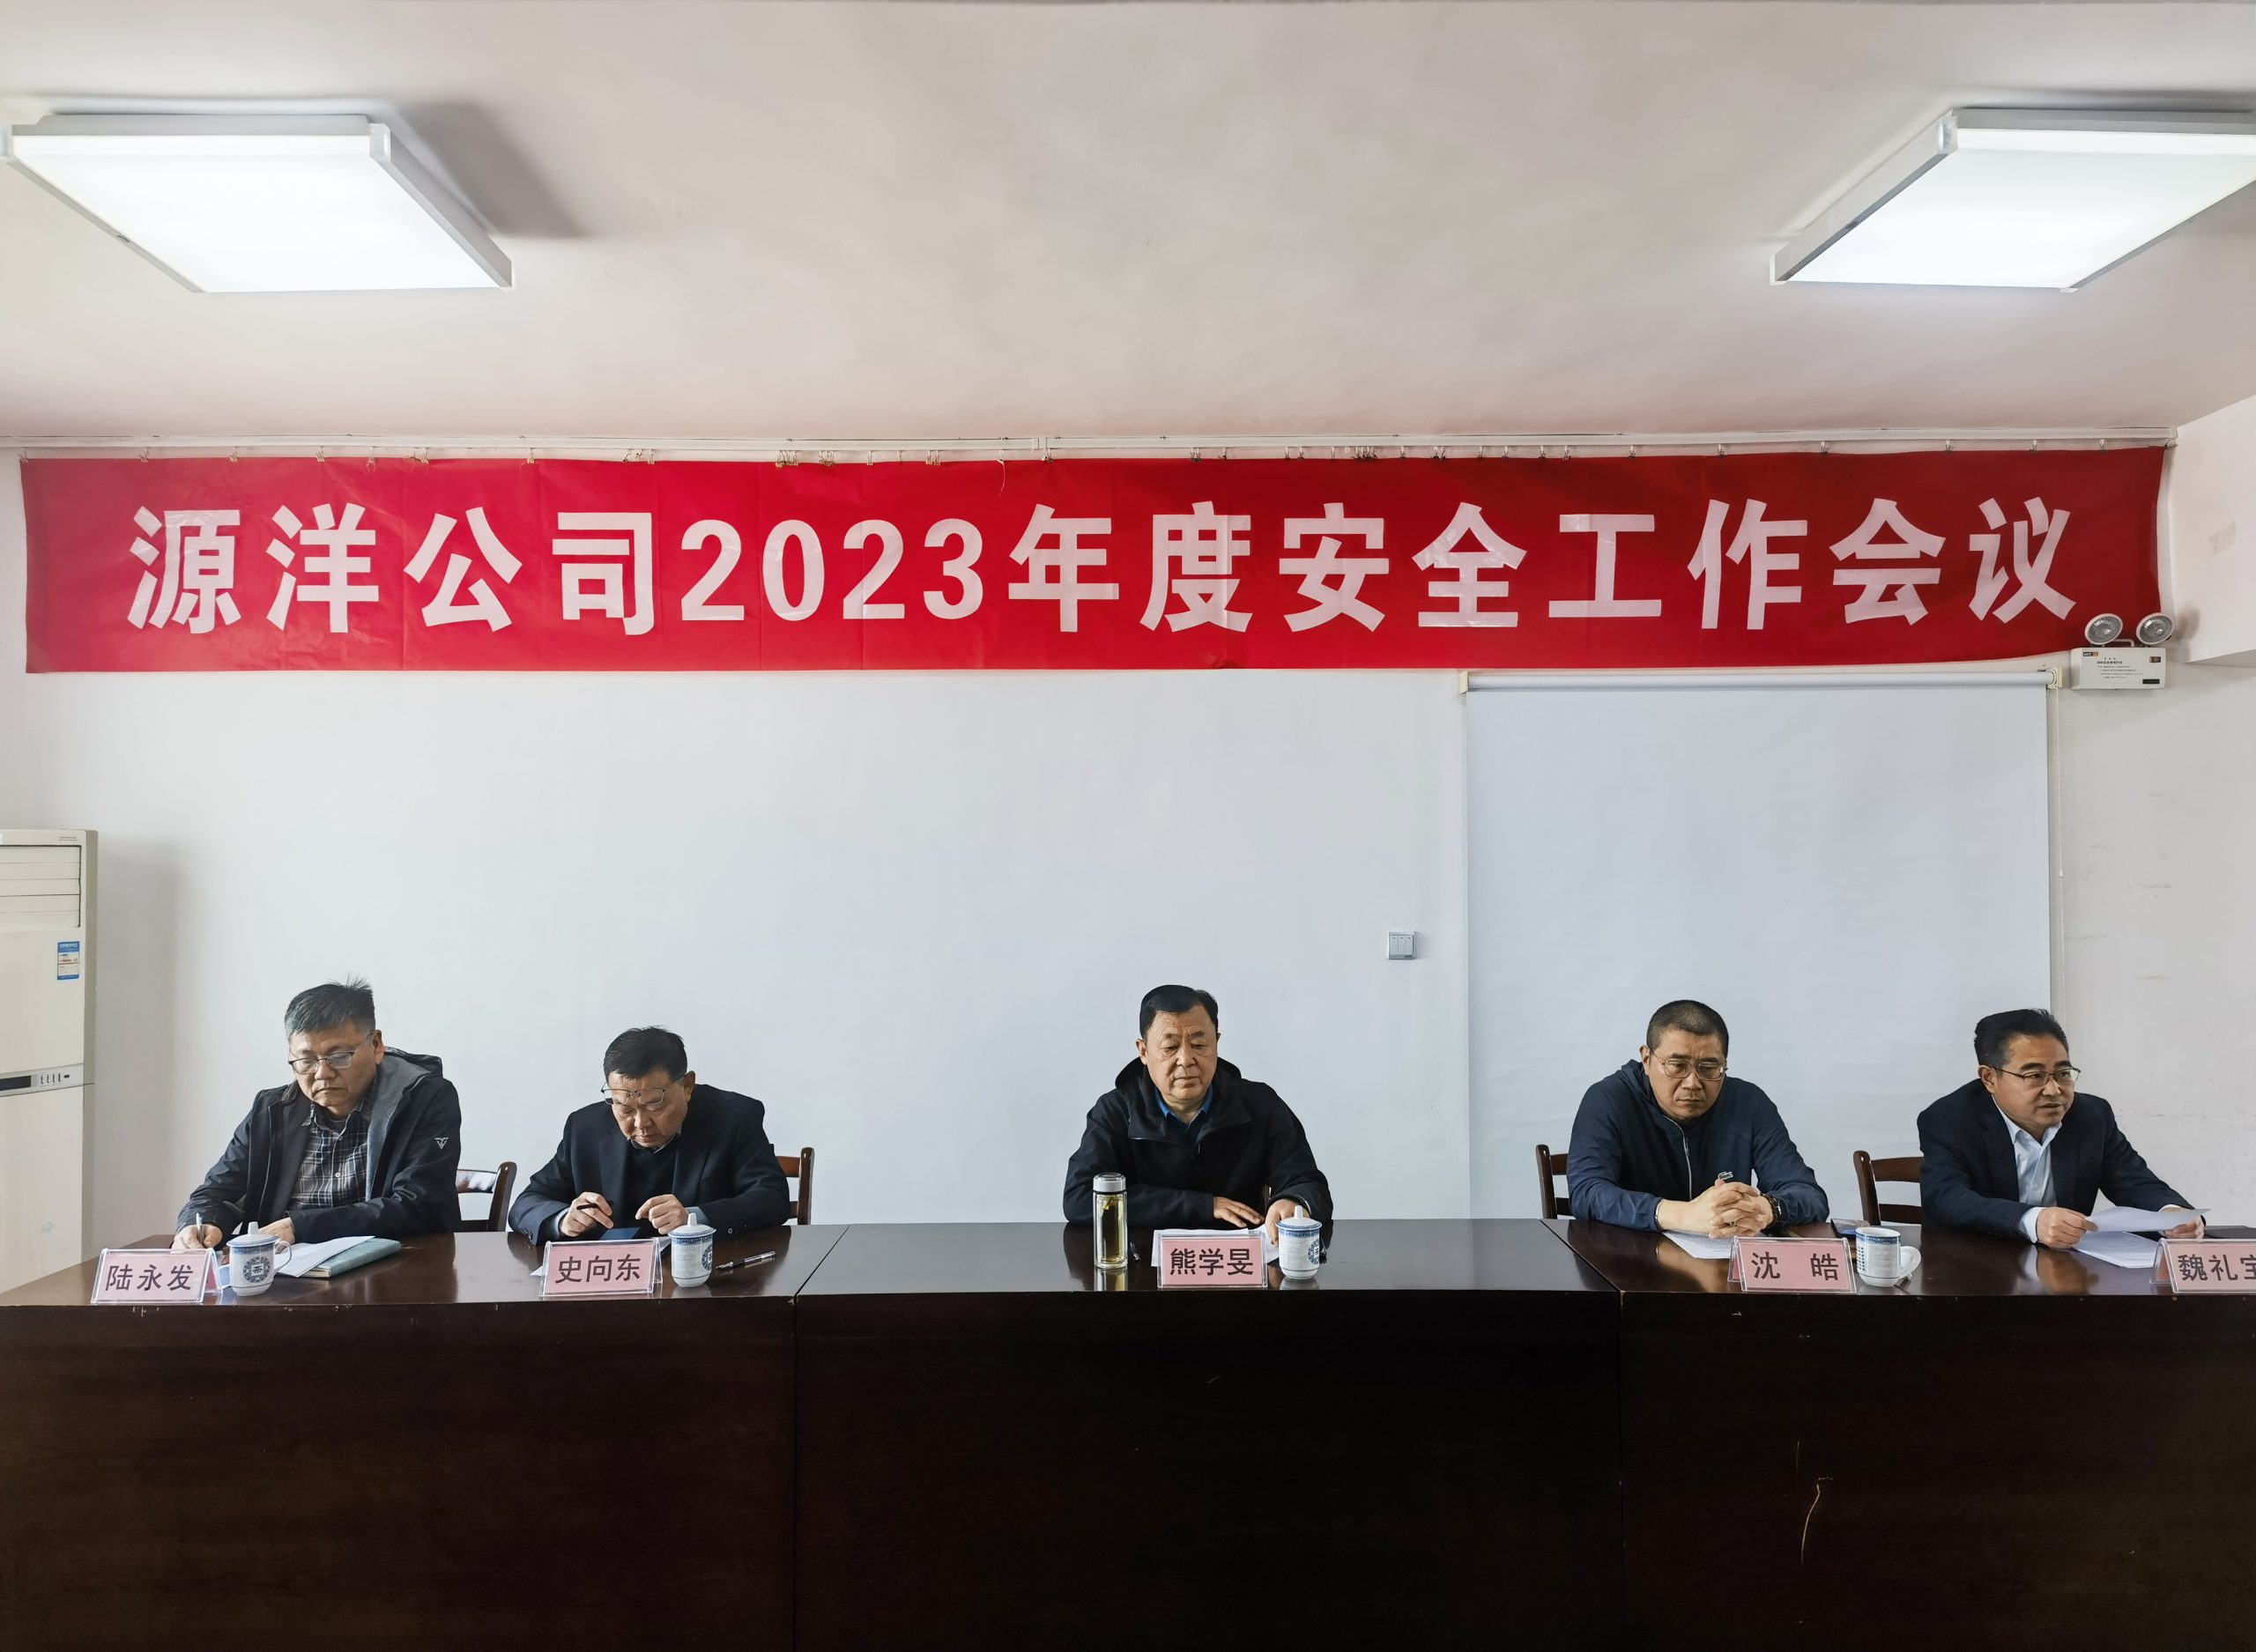 徐州源洋商贸发展公司召开二O二三年安全工作会议